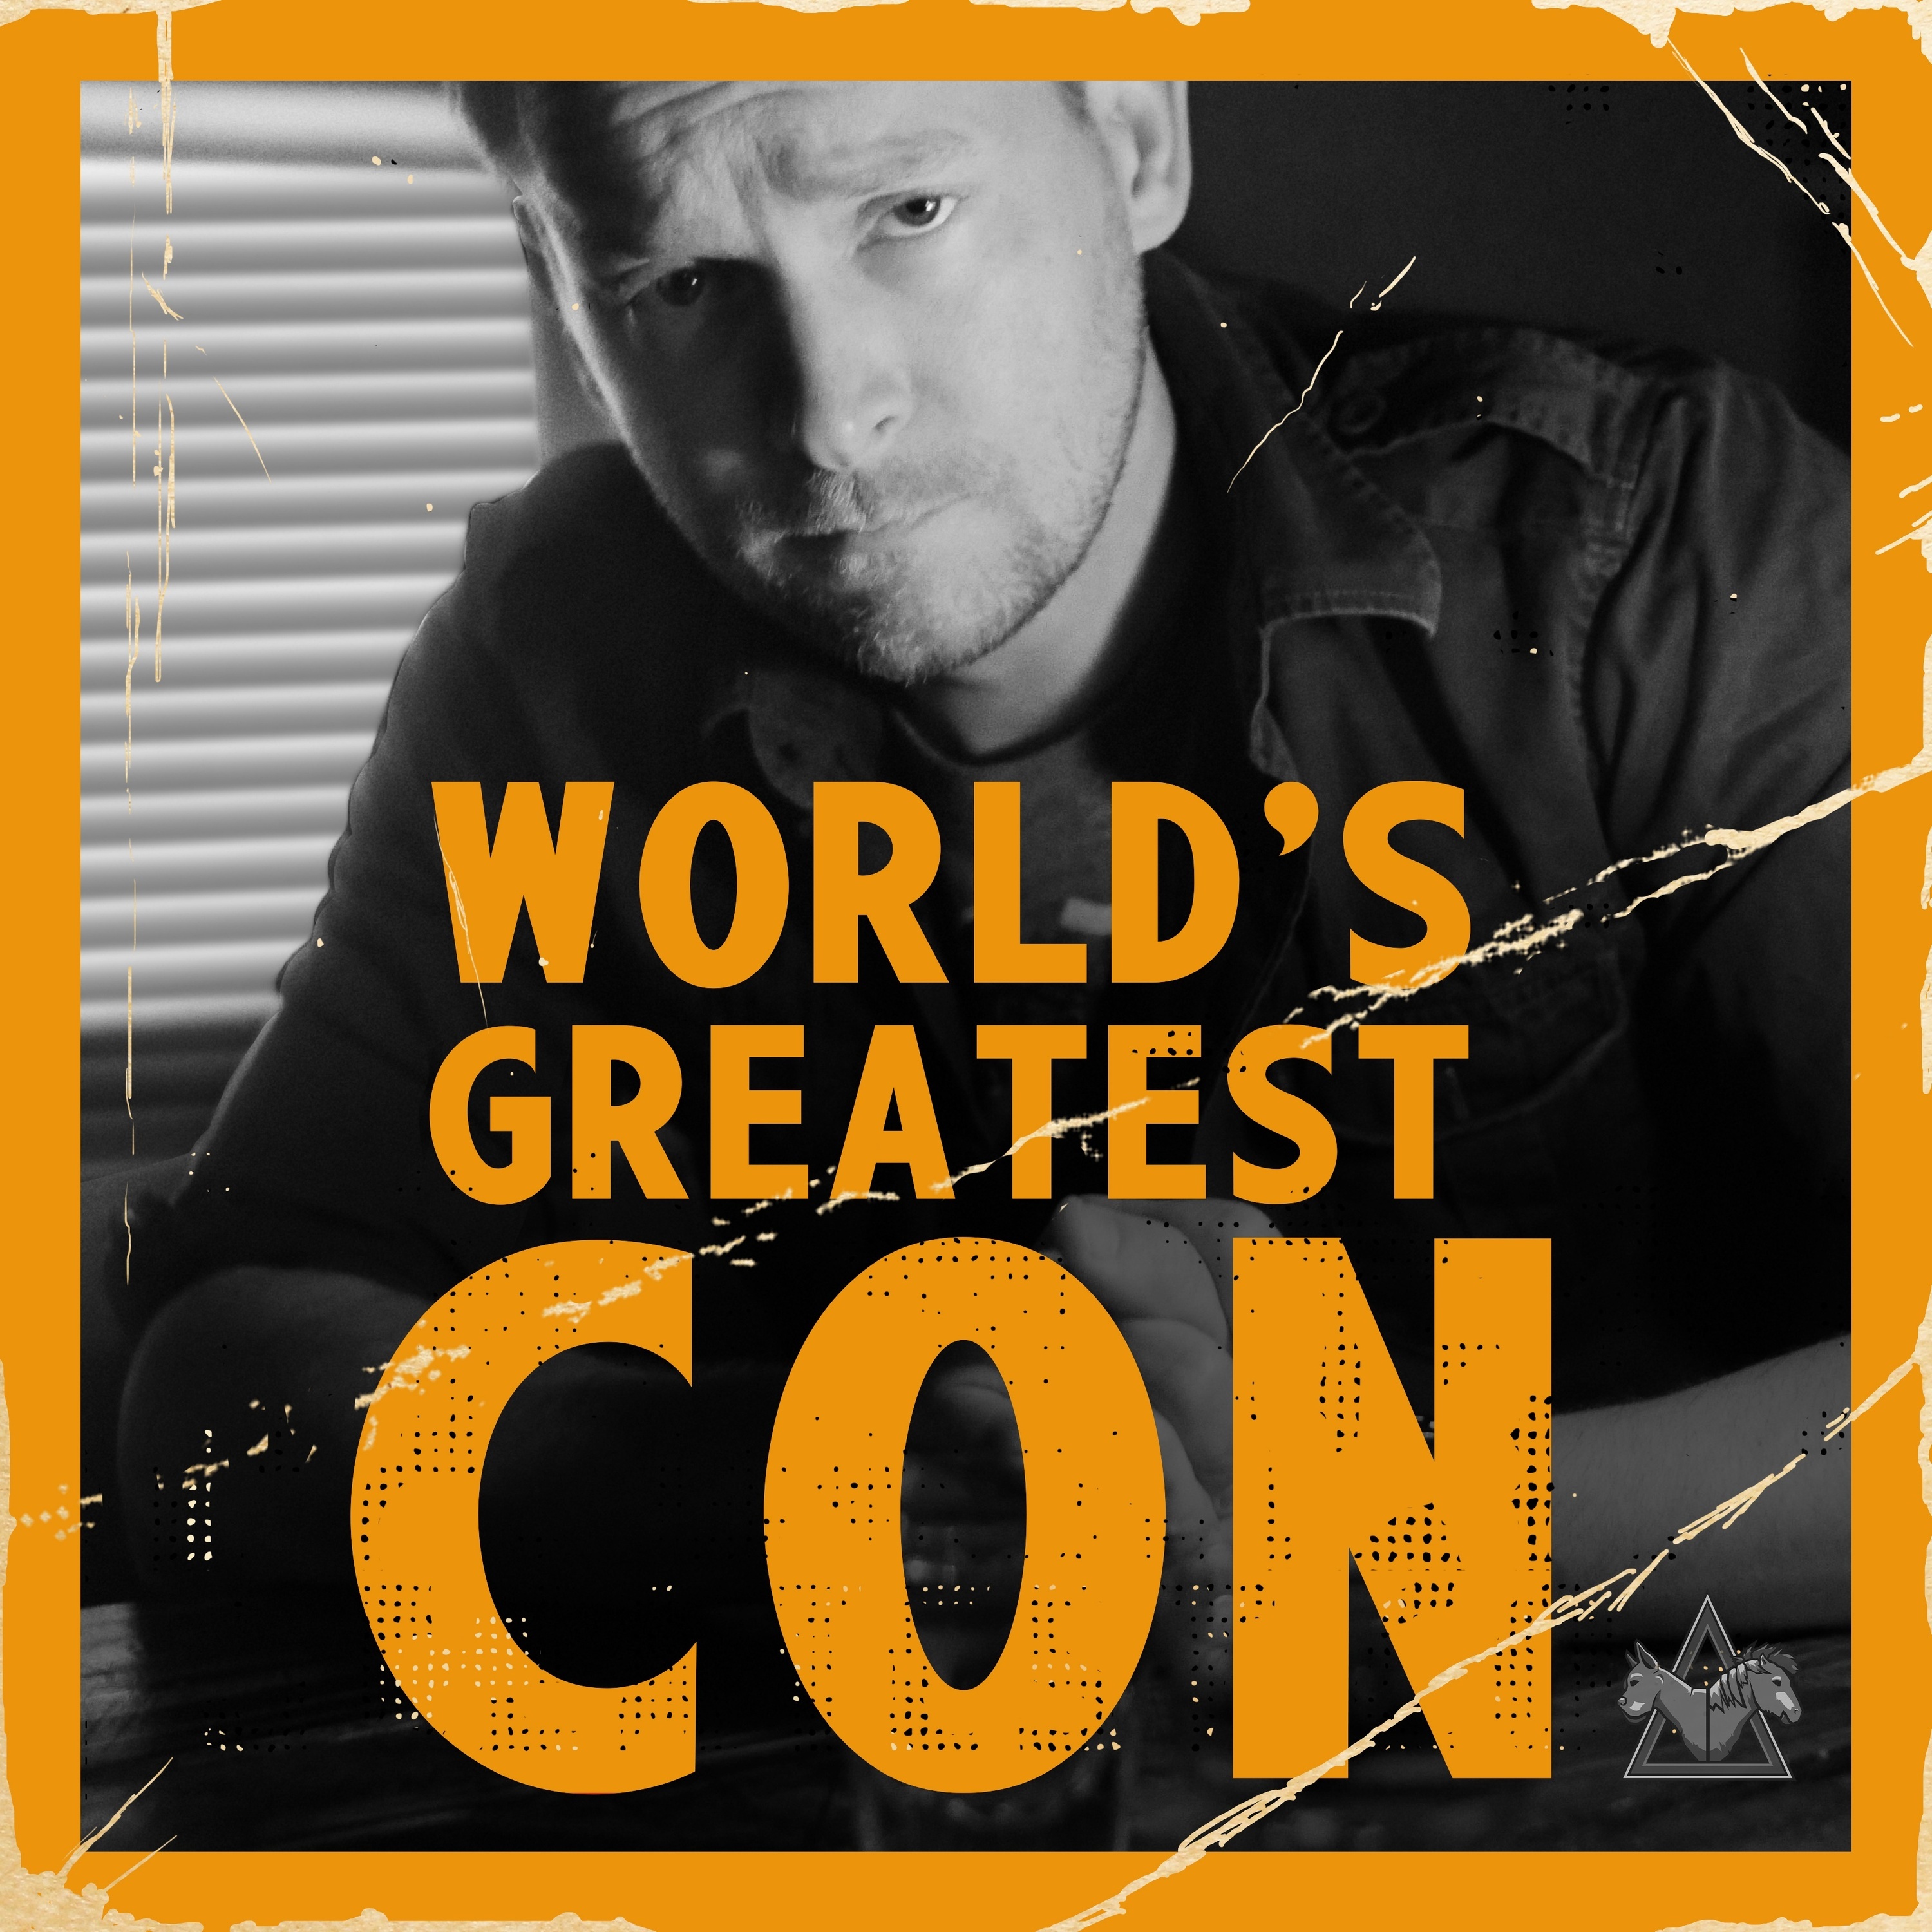 World's Greatest Con Feature Trailer